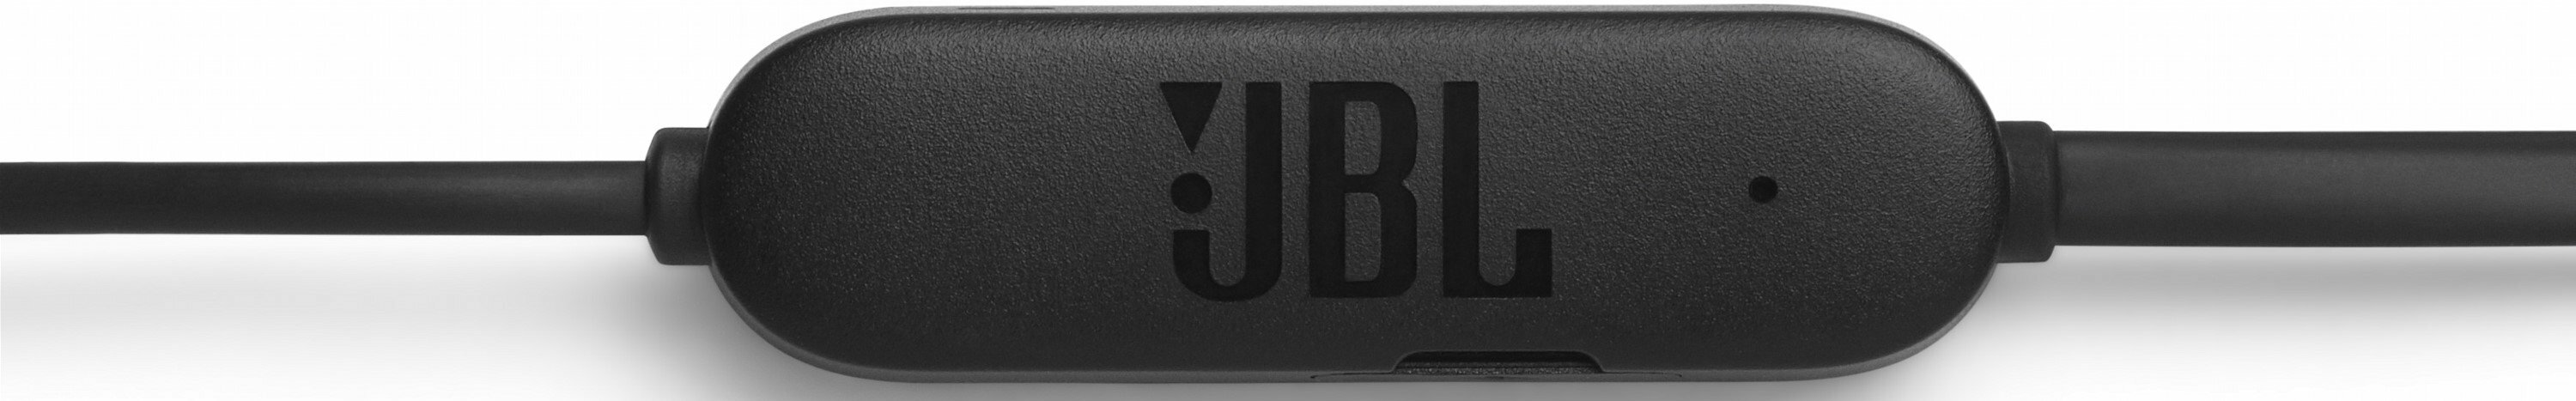 JBL T215BT / Bluetooth / Black